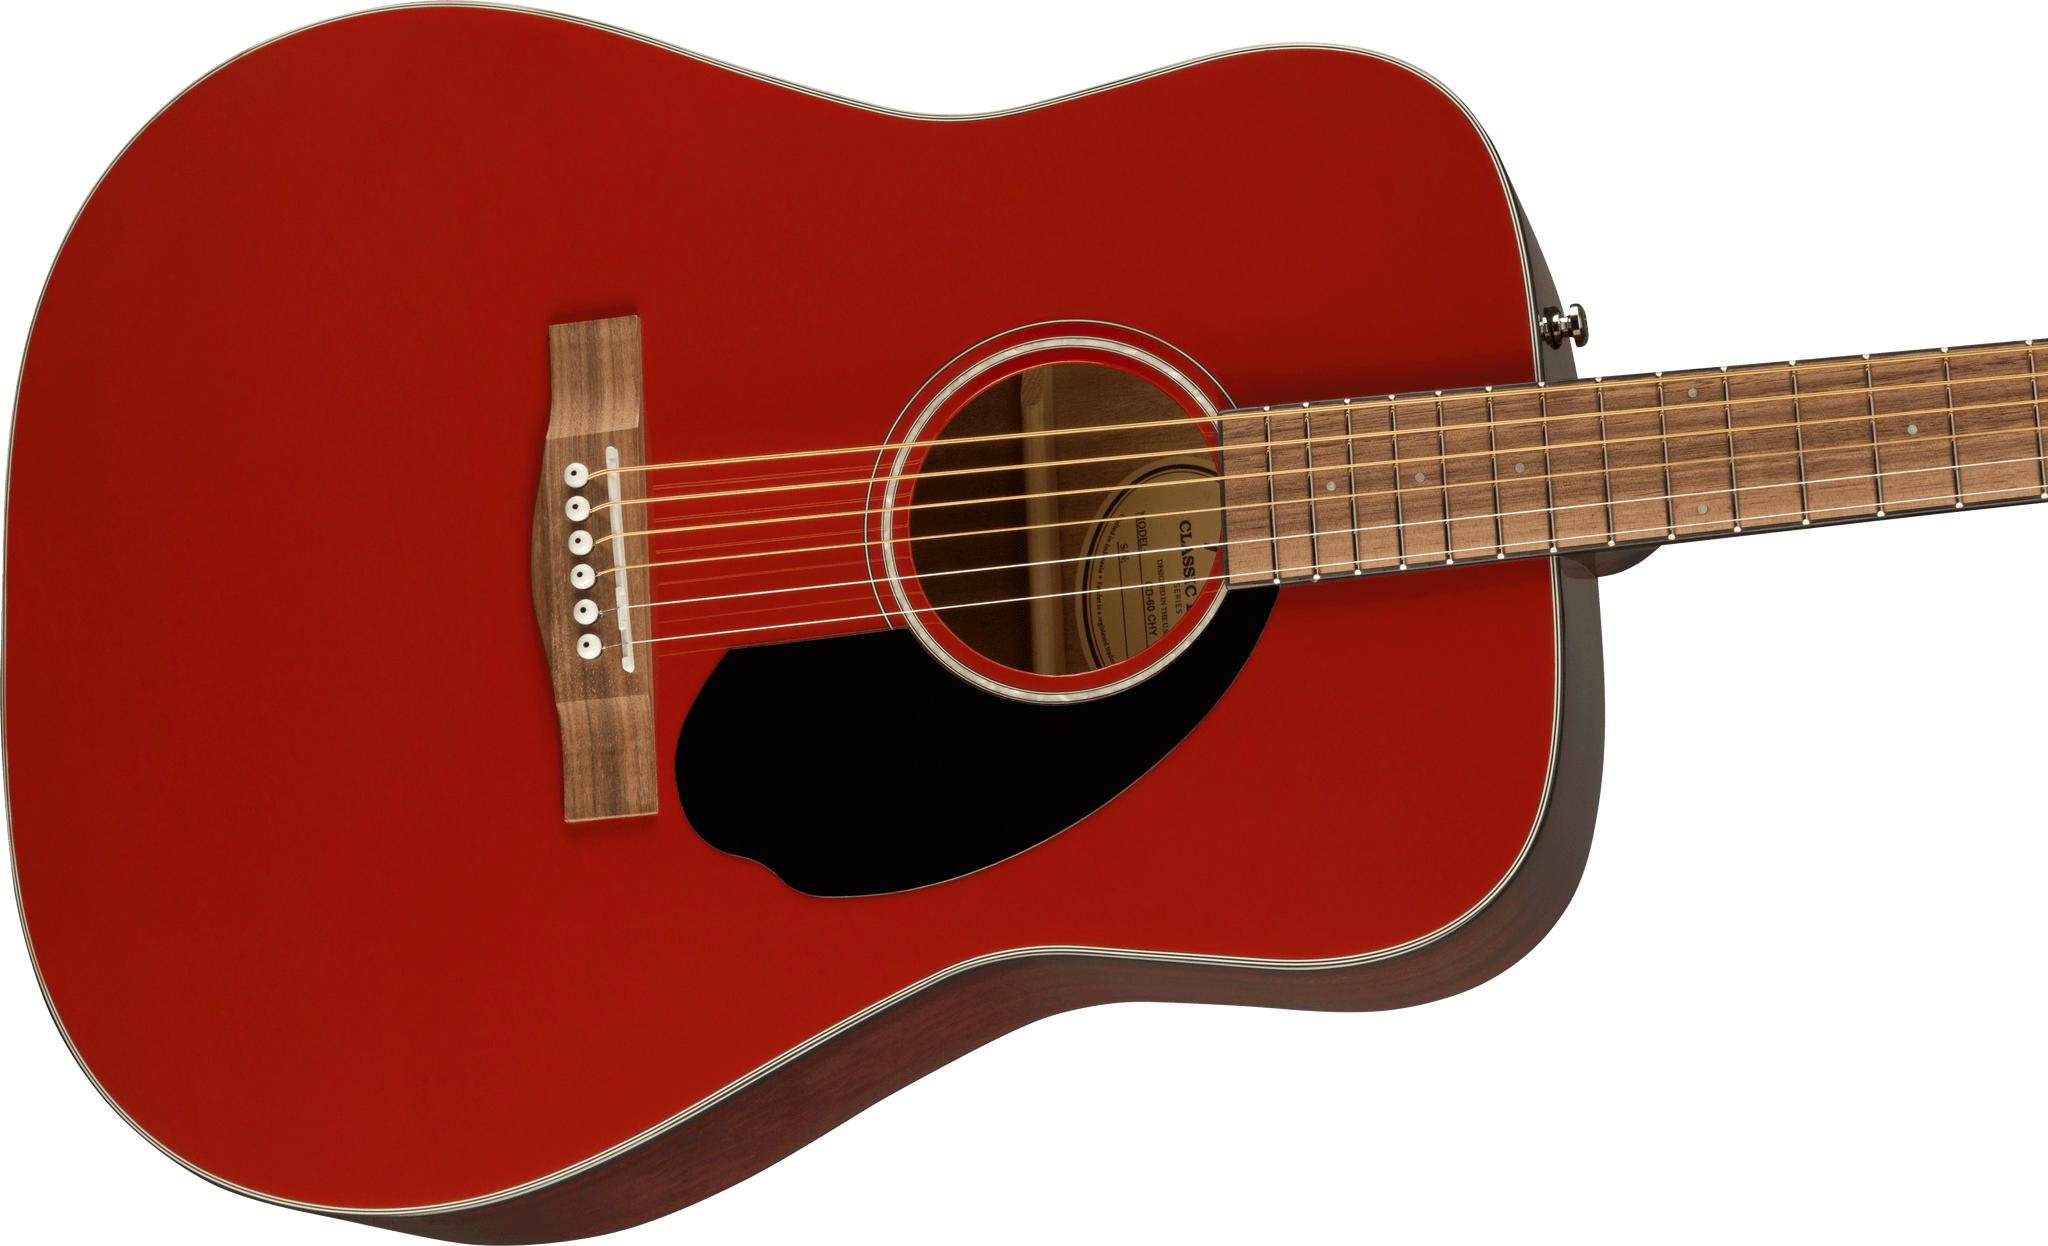 Fender FSR CD-60 Dreadnought Acoustic Guitar, Cherry